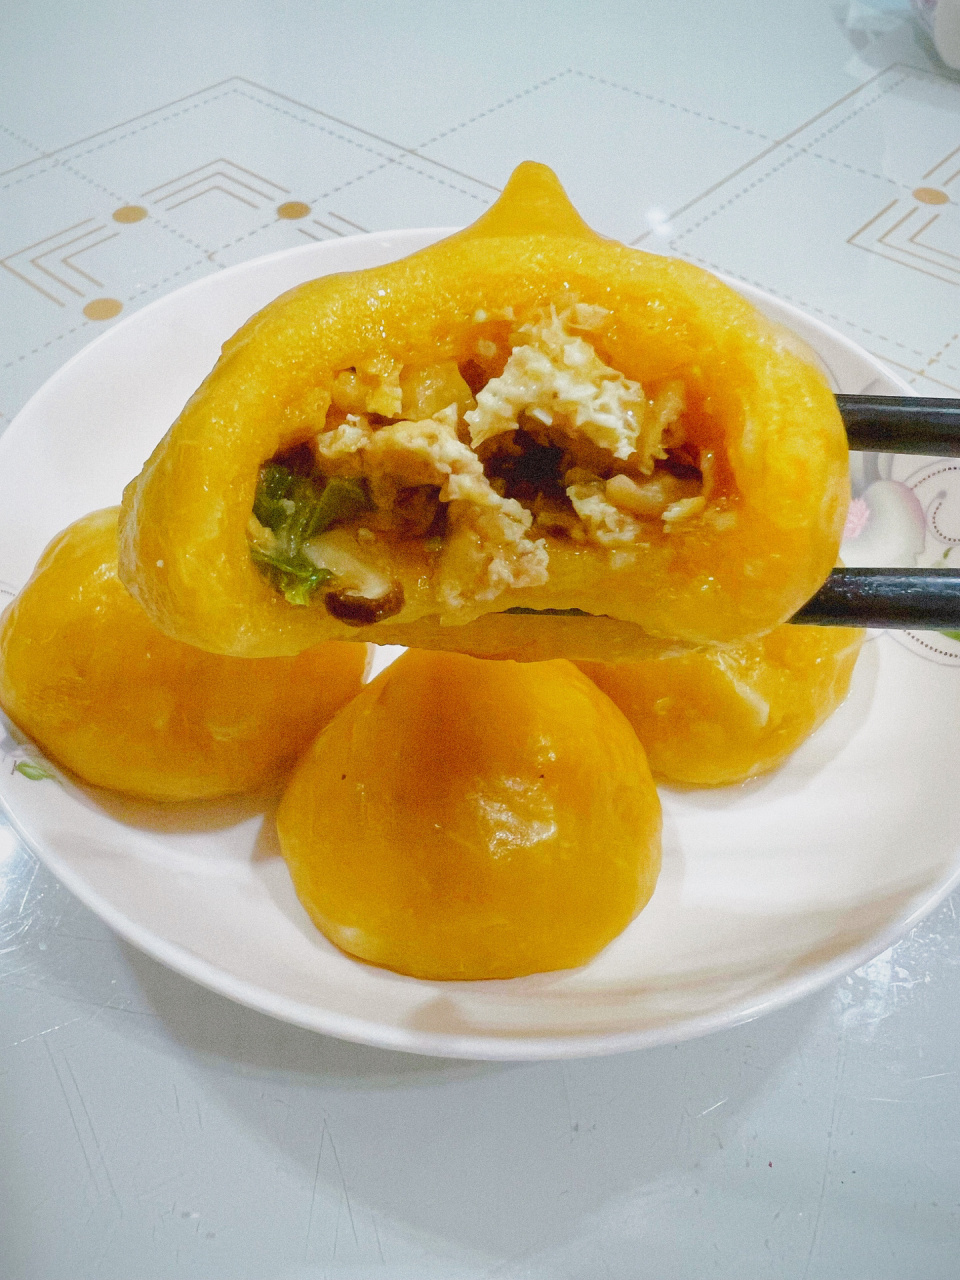 特色美食一修水哨子 修水哨子,是江西省九江市修水县一种特色地方传统